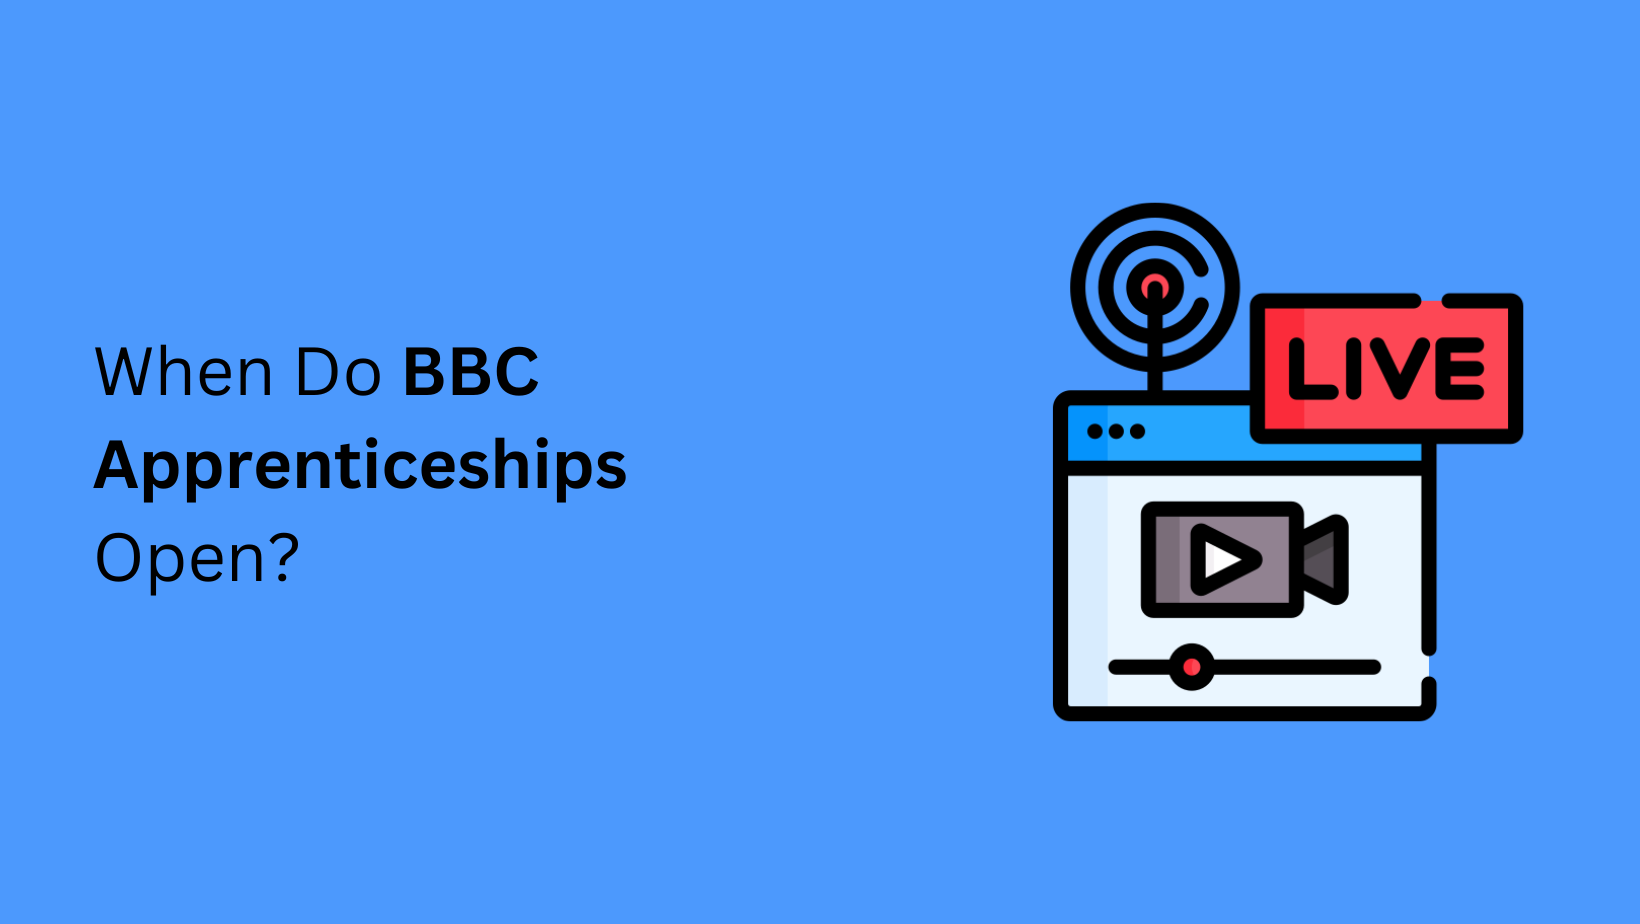 When Do BBC Apprenticeships Open